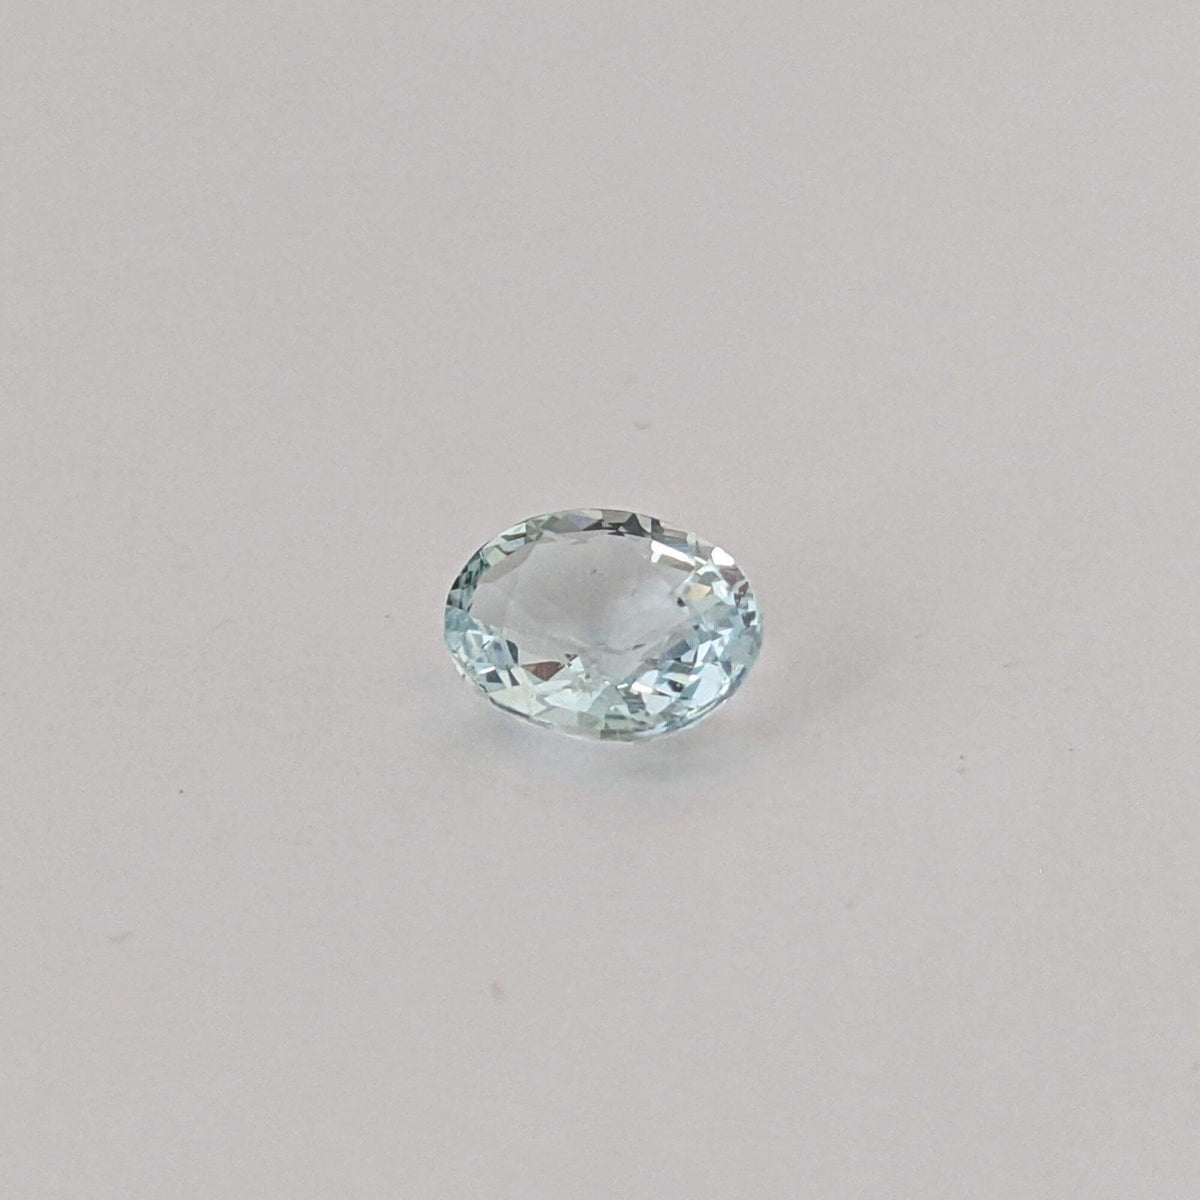 Aquamarine | Oval Cut | Medium Blue | 8x6 mm 1.25ct | Brazil